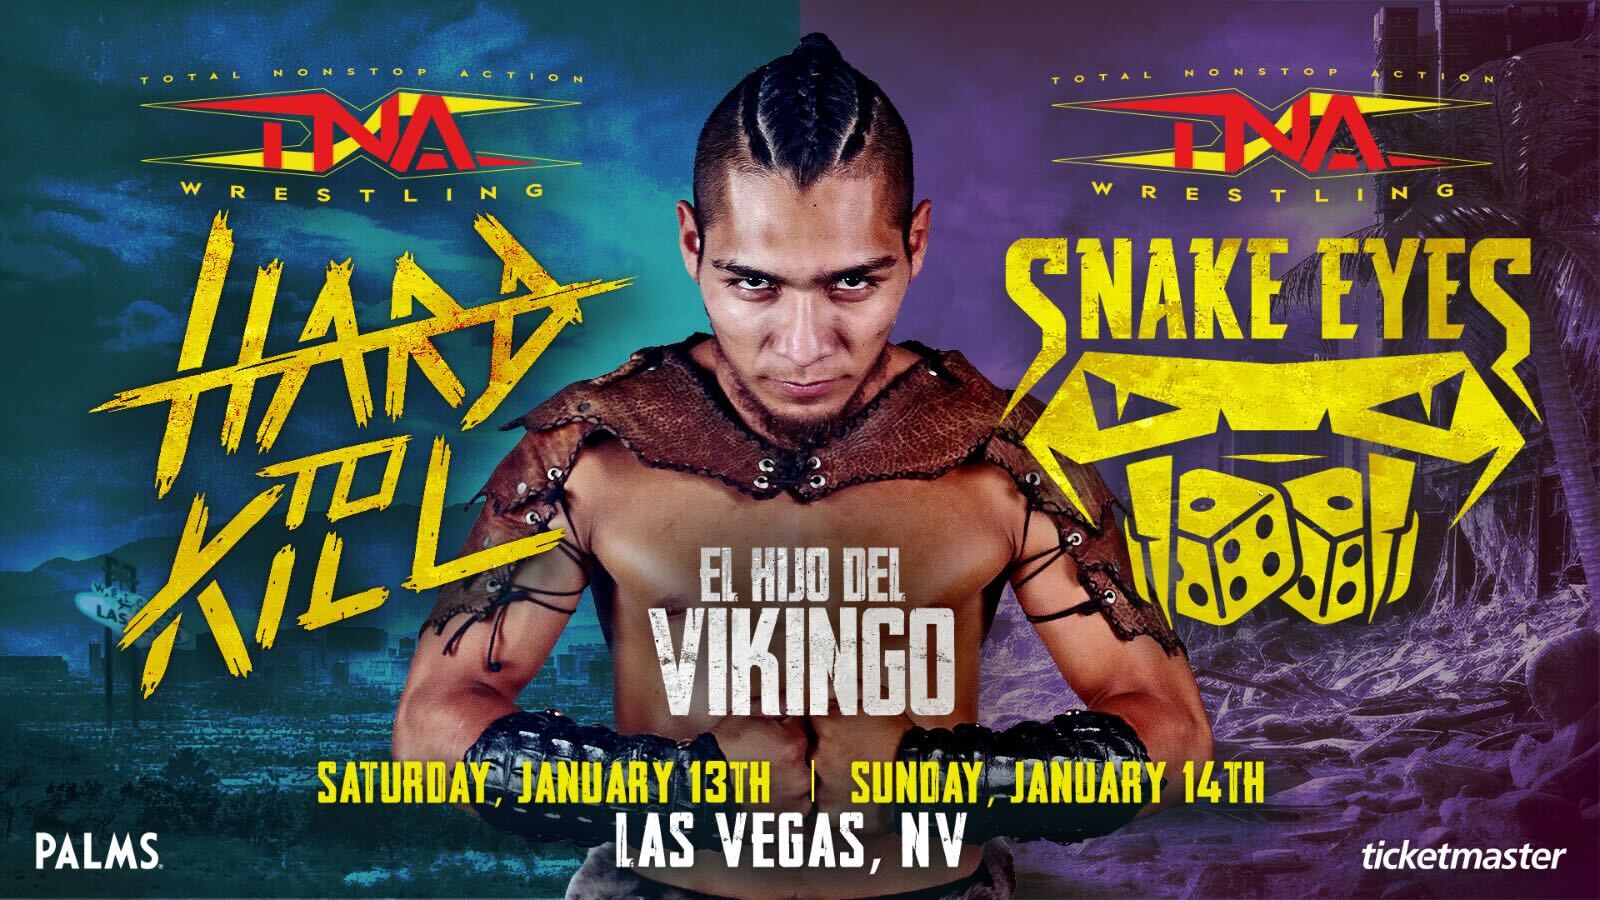 El Hijo del Vikingo Soars Into TNA Wrestling at Hard To Kill & Snake Eyes – TNA Wrestling